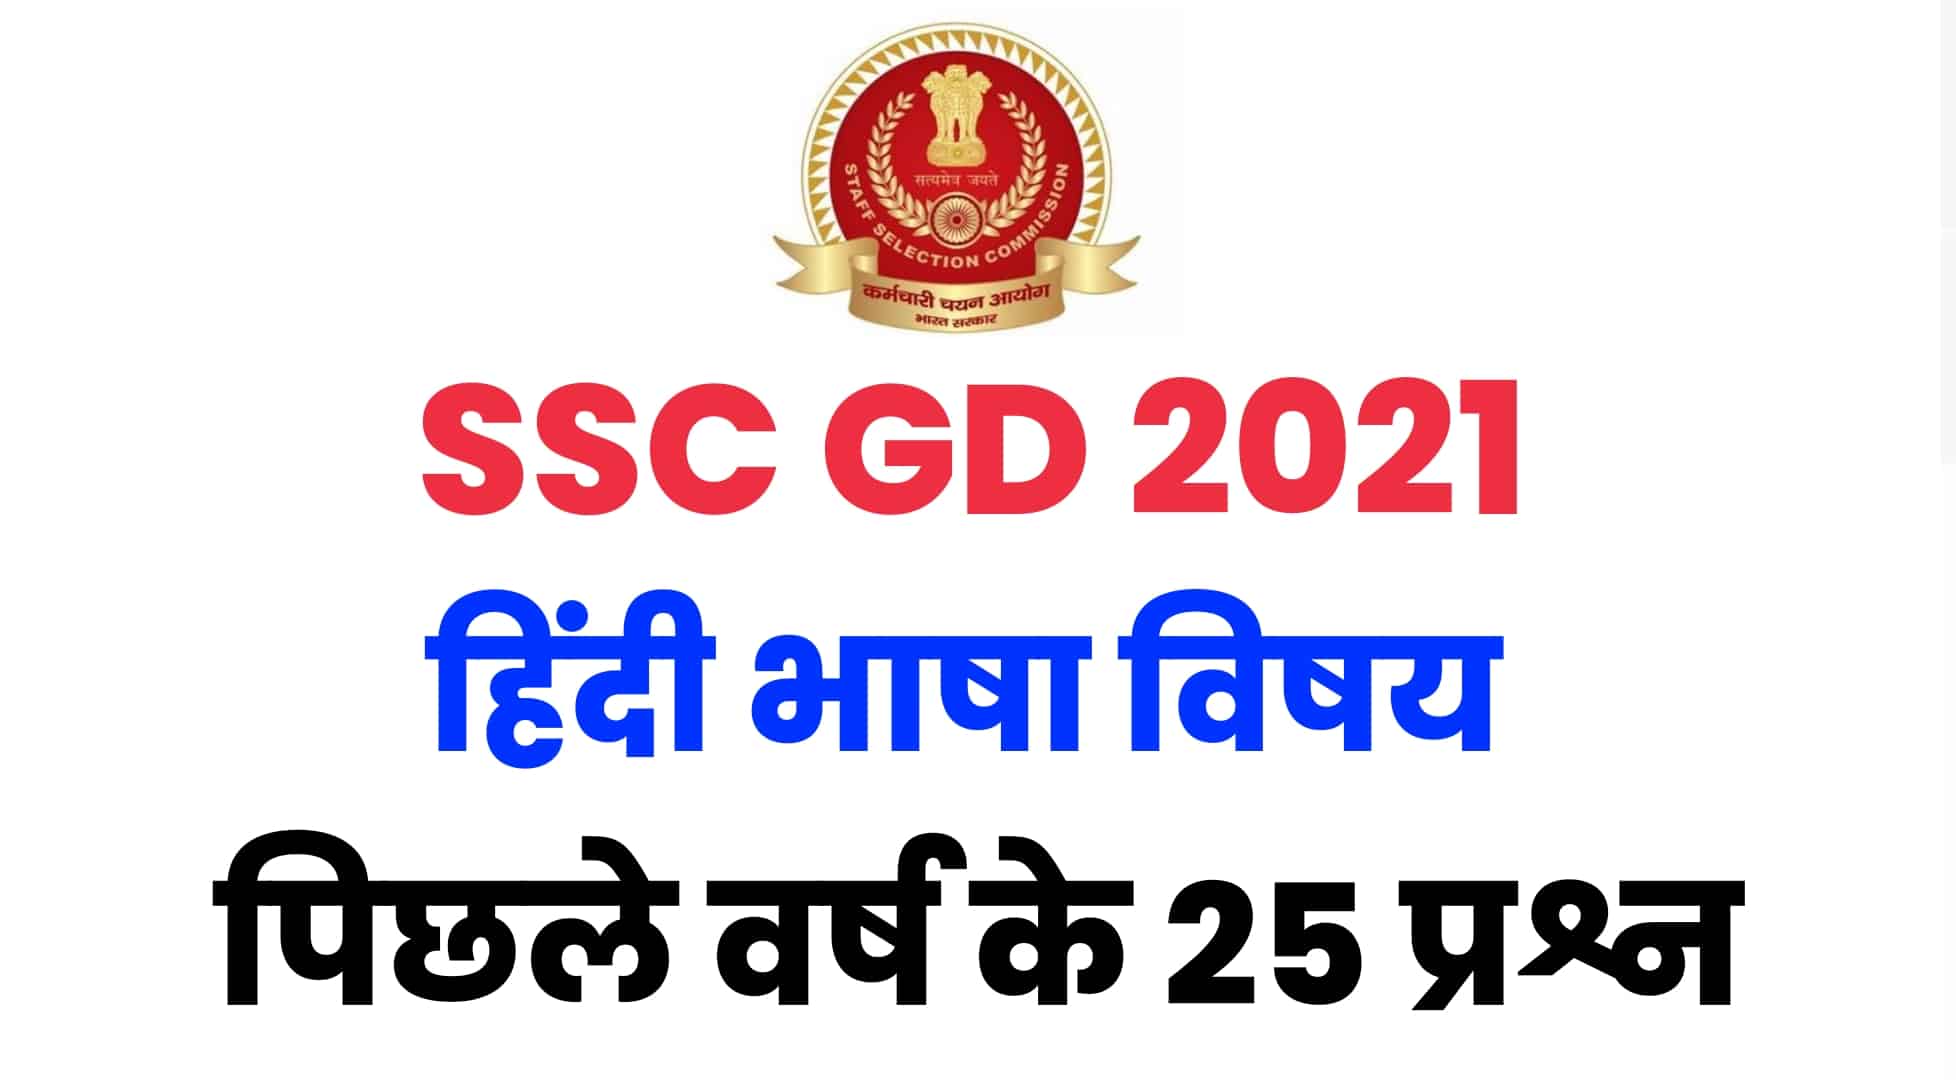 SSC GD परीक्षा में हिंदी भाषा में पूछे गए पिछले वर्षों के प्रश्नों का संग्रह : परीक्षा देने पहले अवश्य देखें